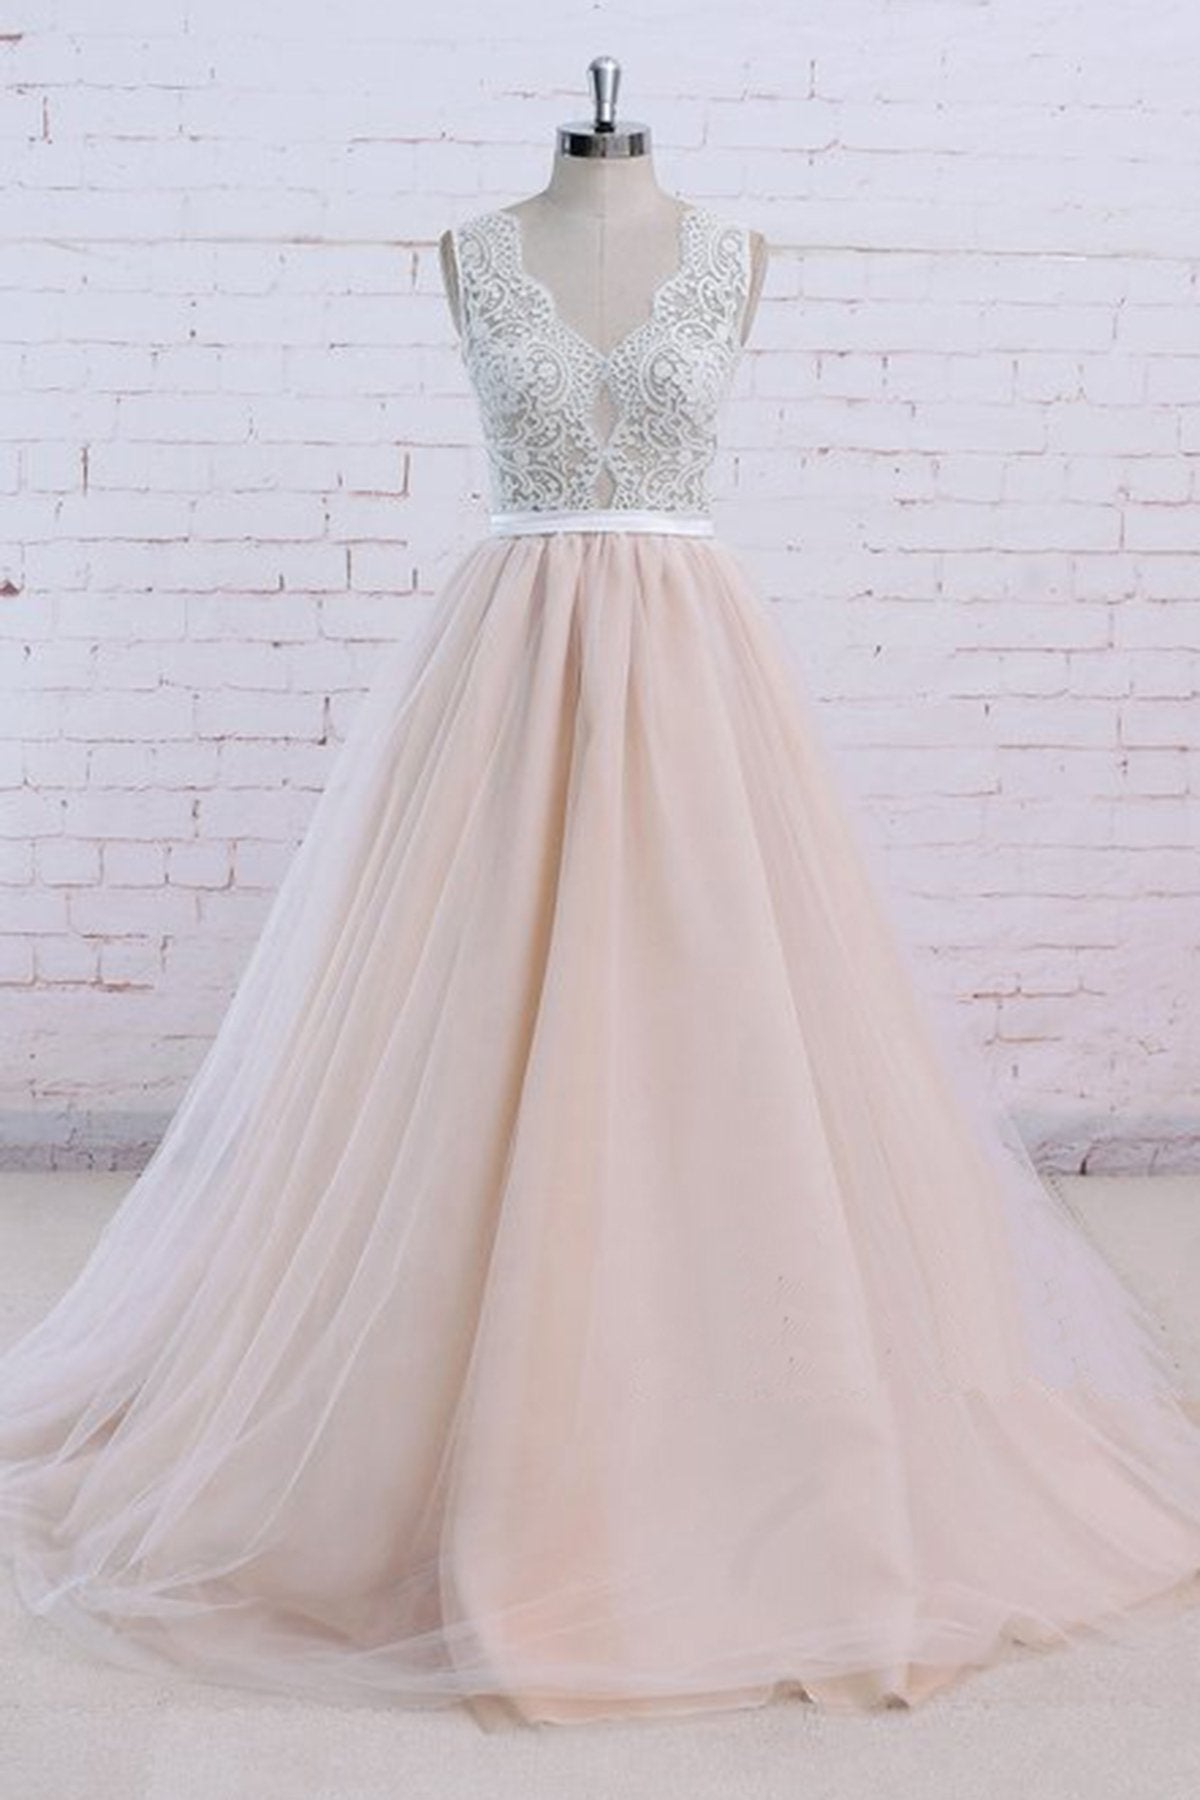 AffordableBlush Pink Tulle Wedding Dress Ivory Lace V-Neck Vintage Bridal Gowns On Sale-27dress